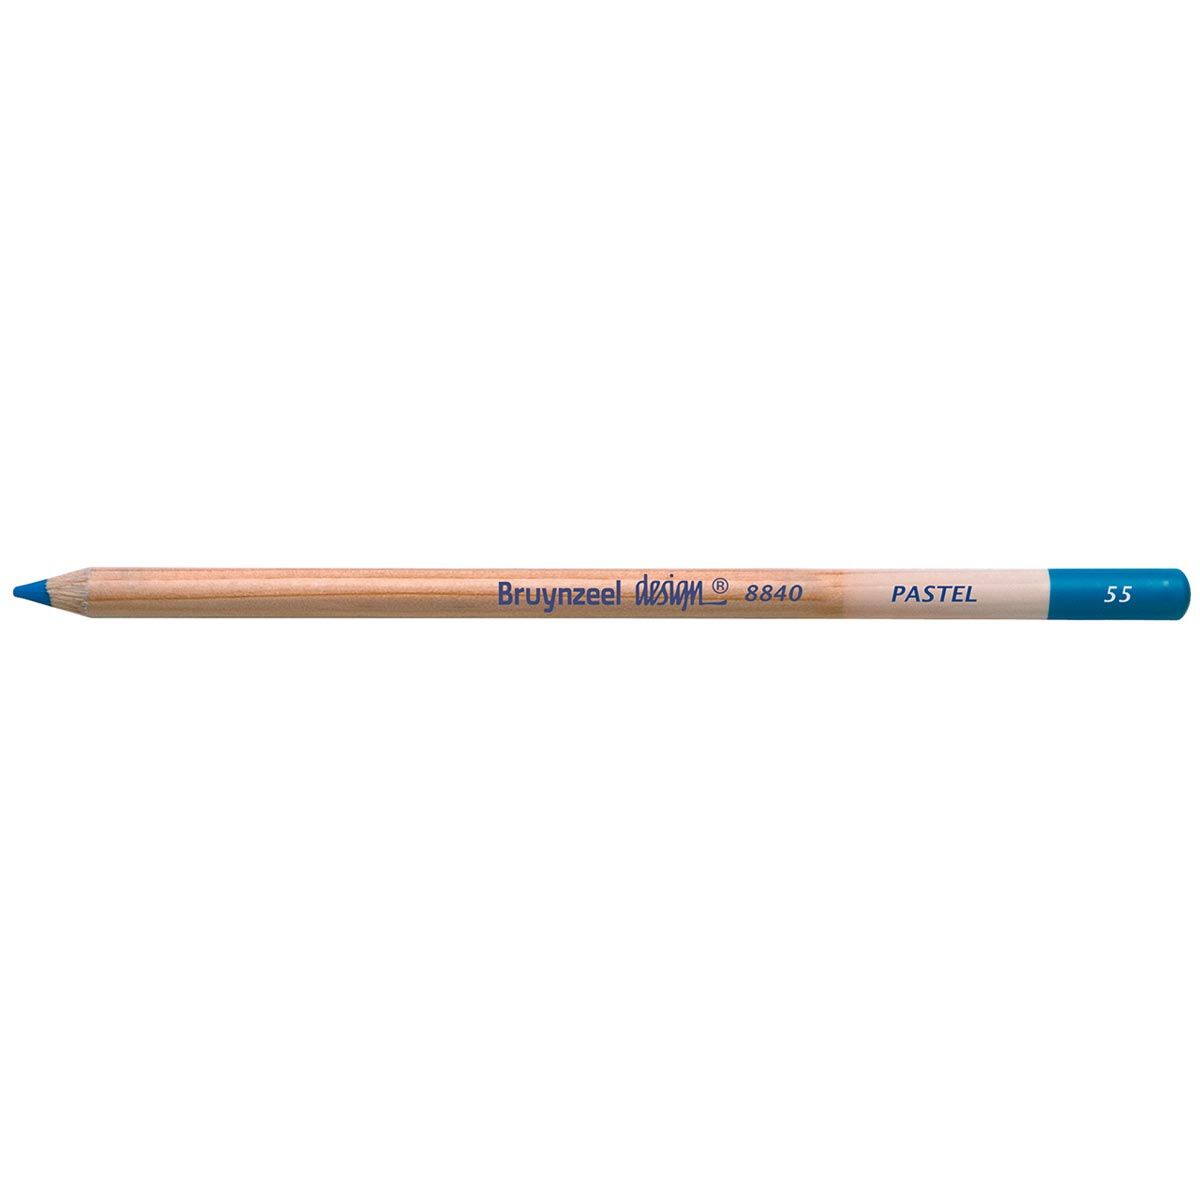 Bruynzeel Design Pastel Pencil - Cobalt Blue 55